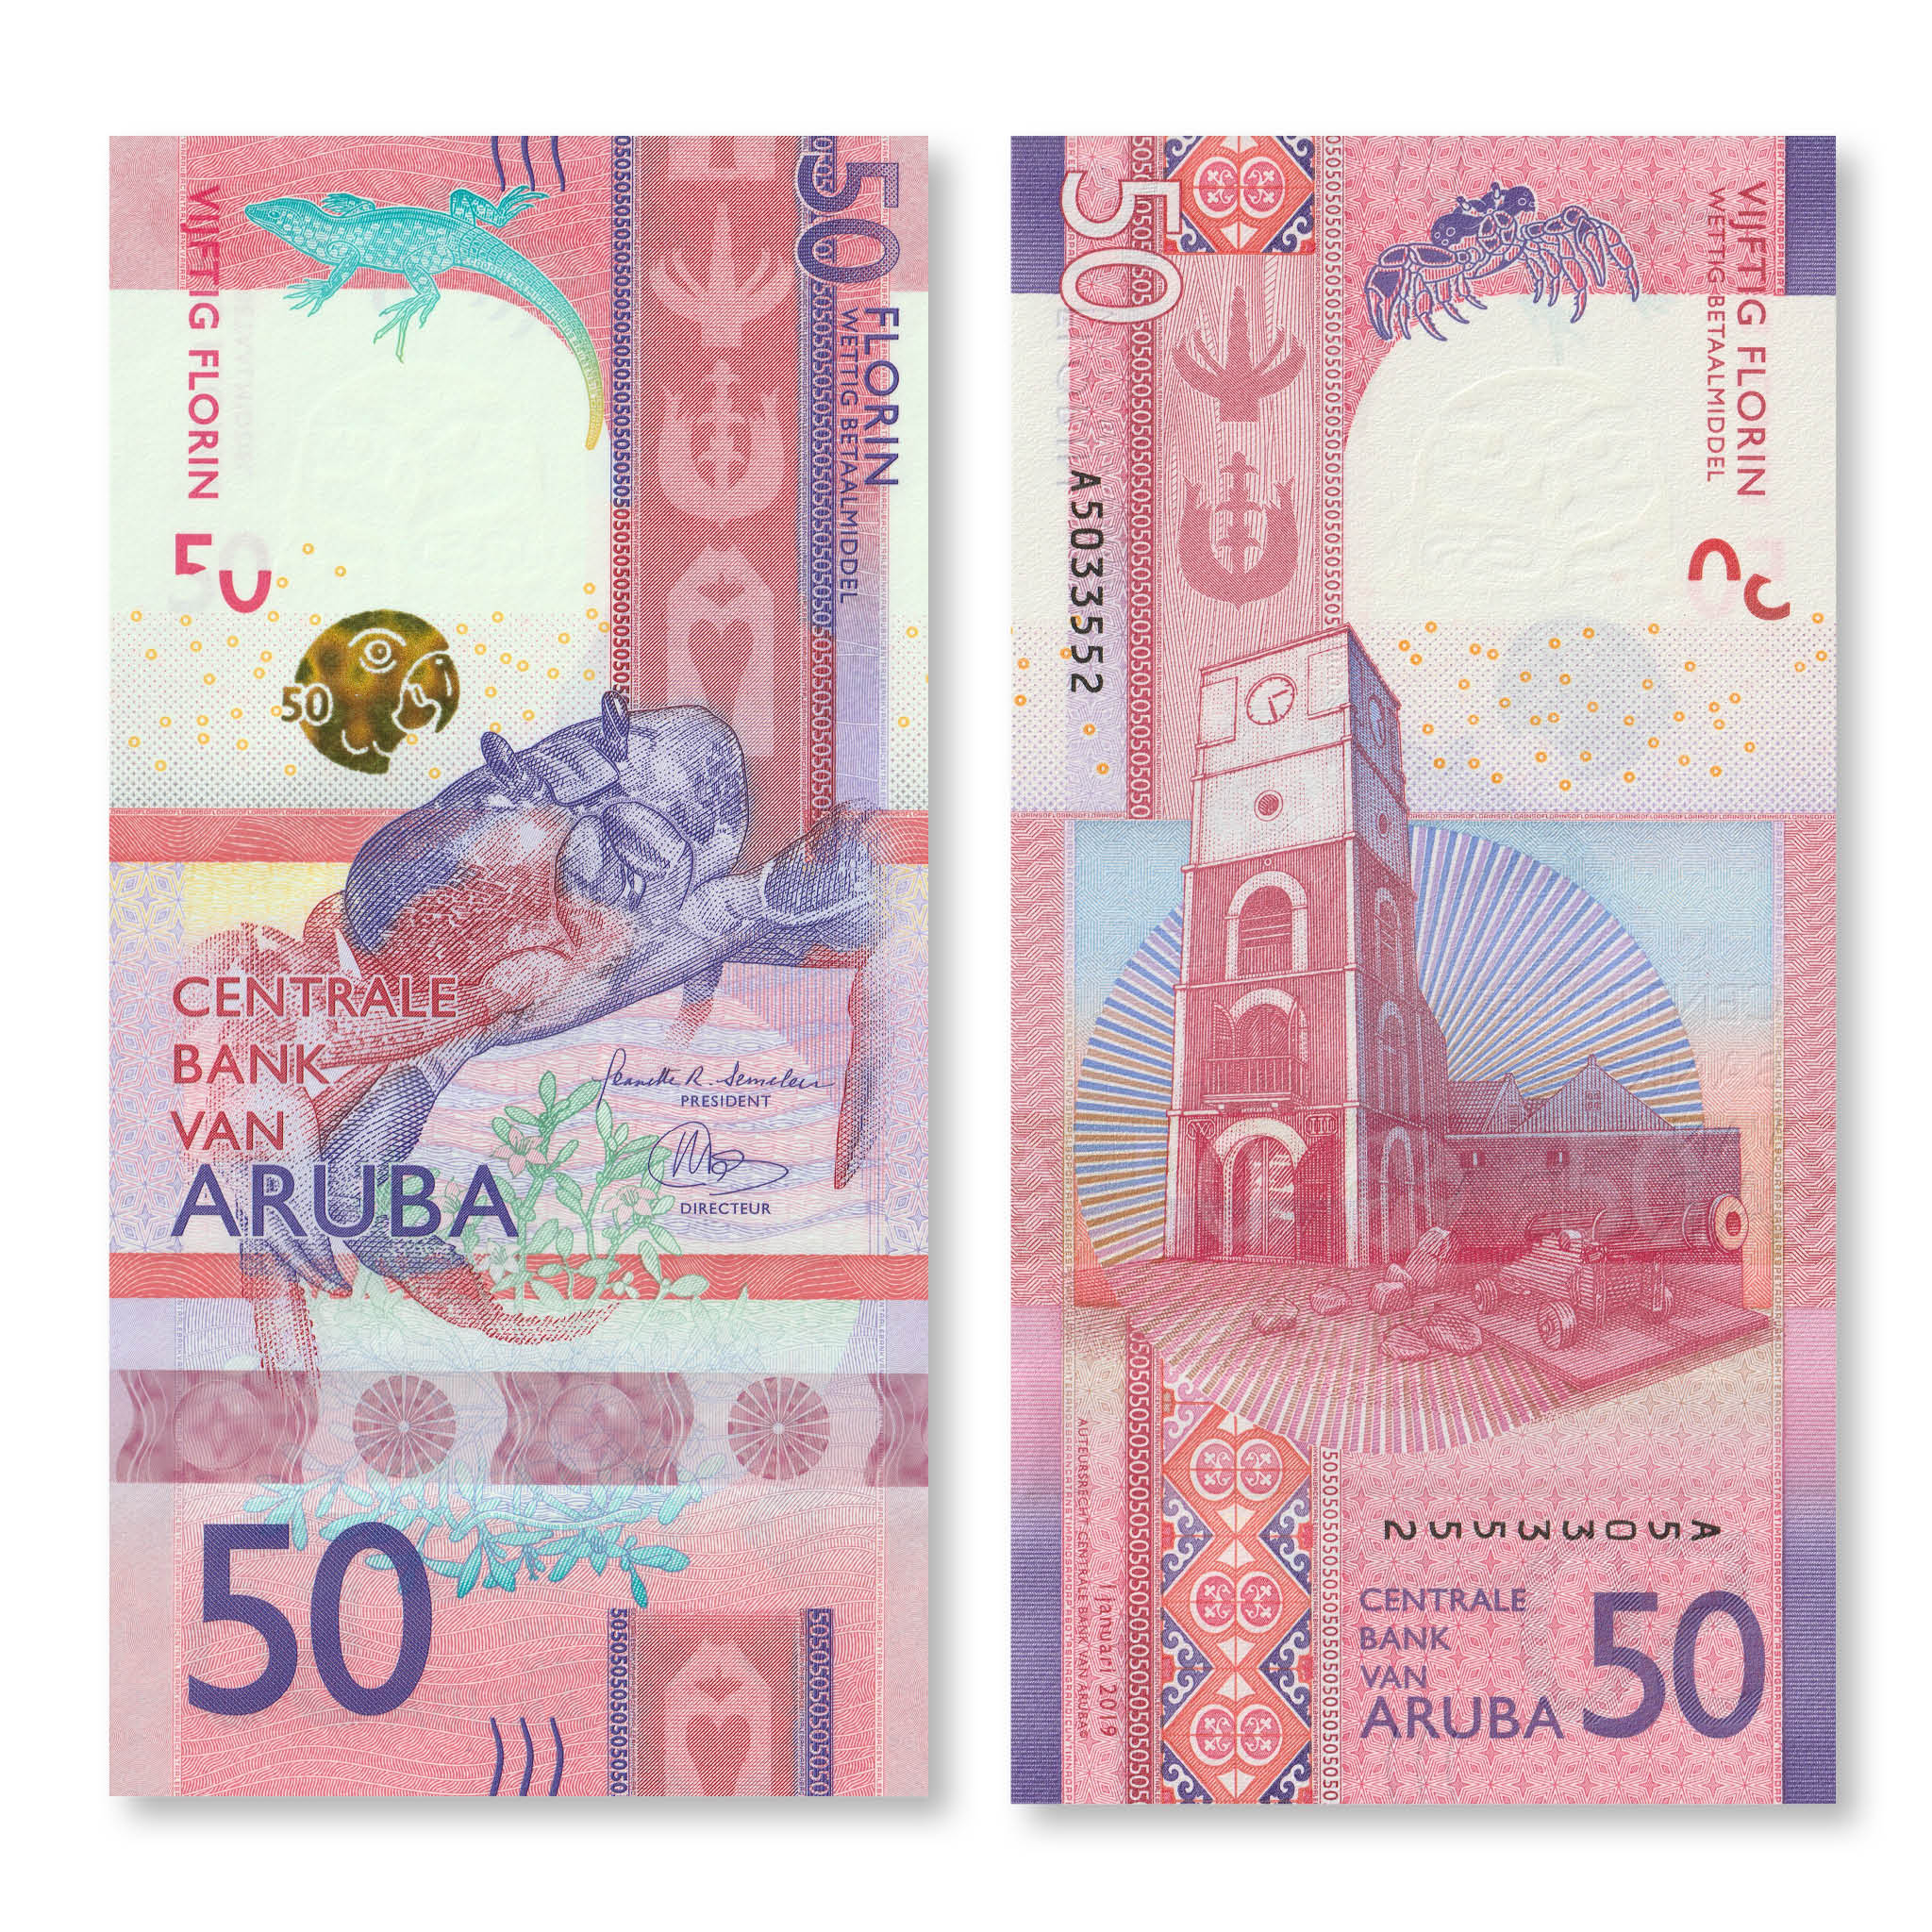 Aruba 50 Florin, 2019, B123a, UNC - Robert's World Money - World Banknotes